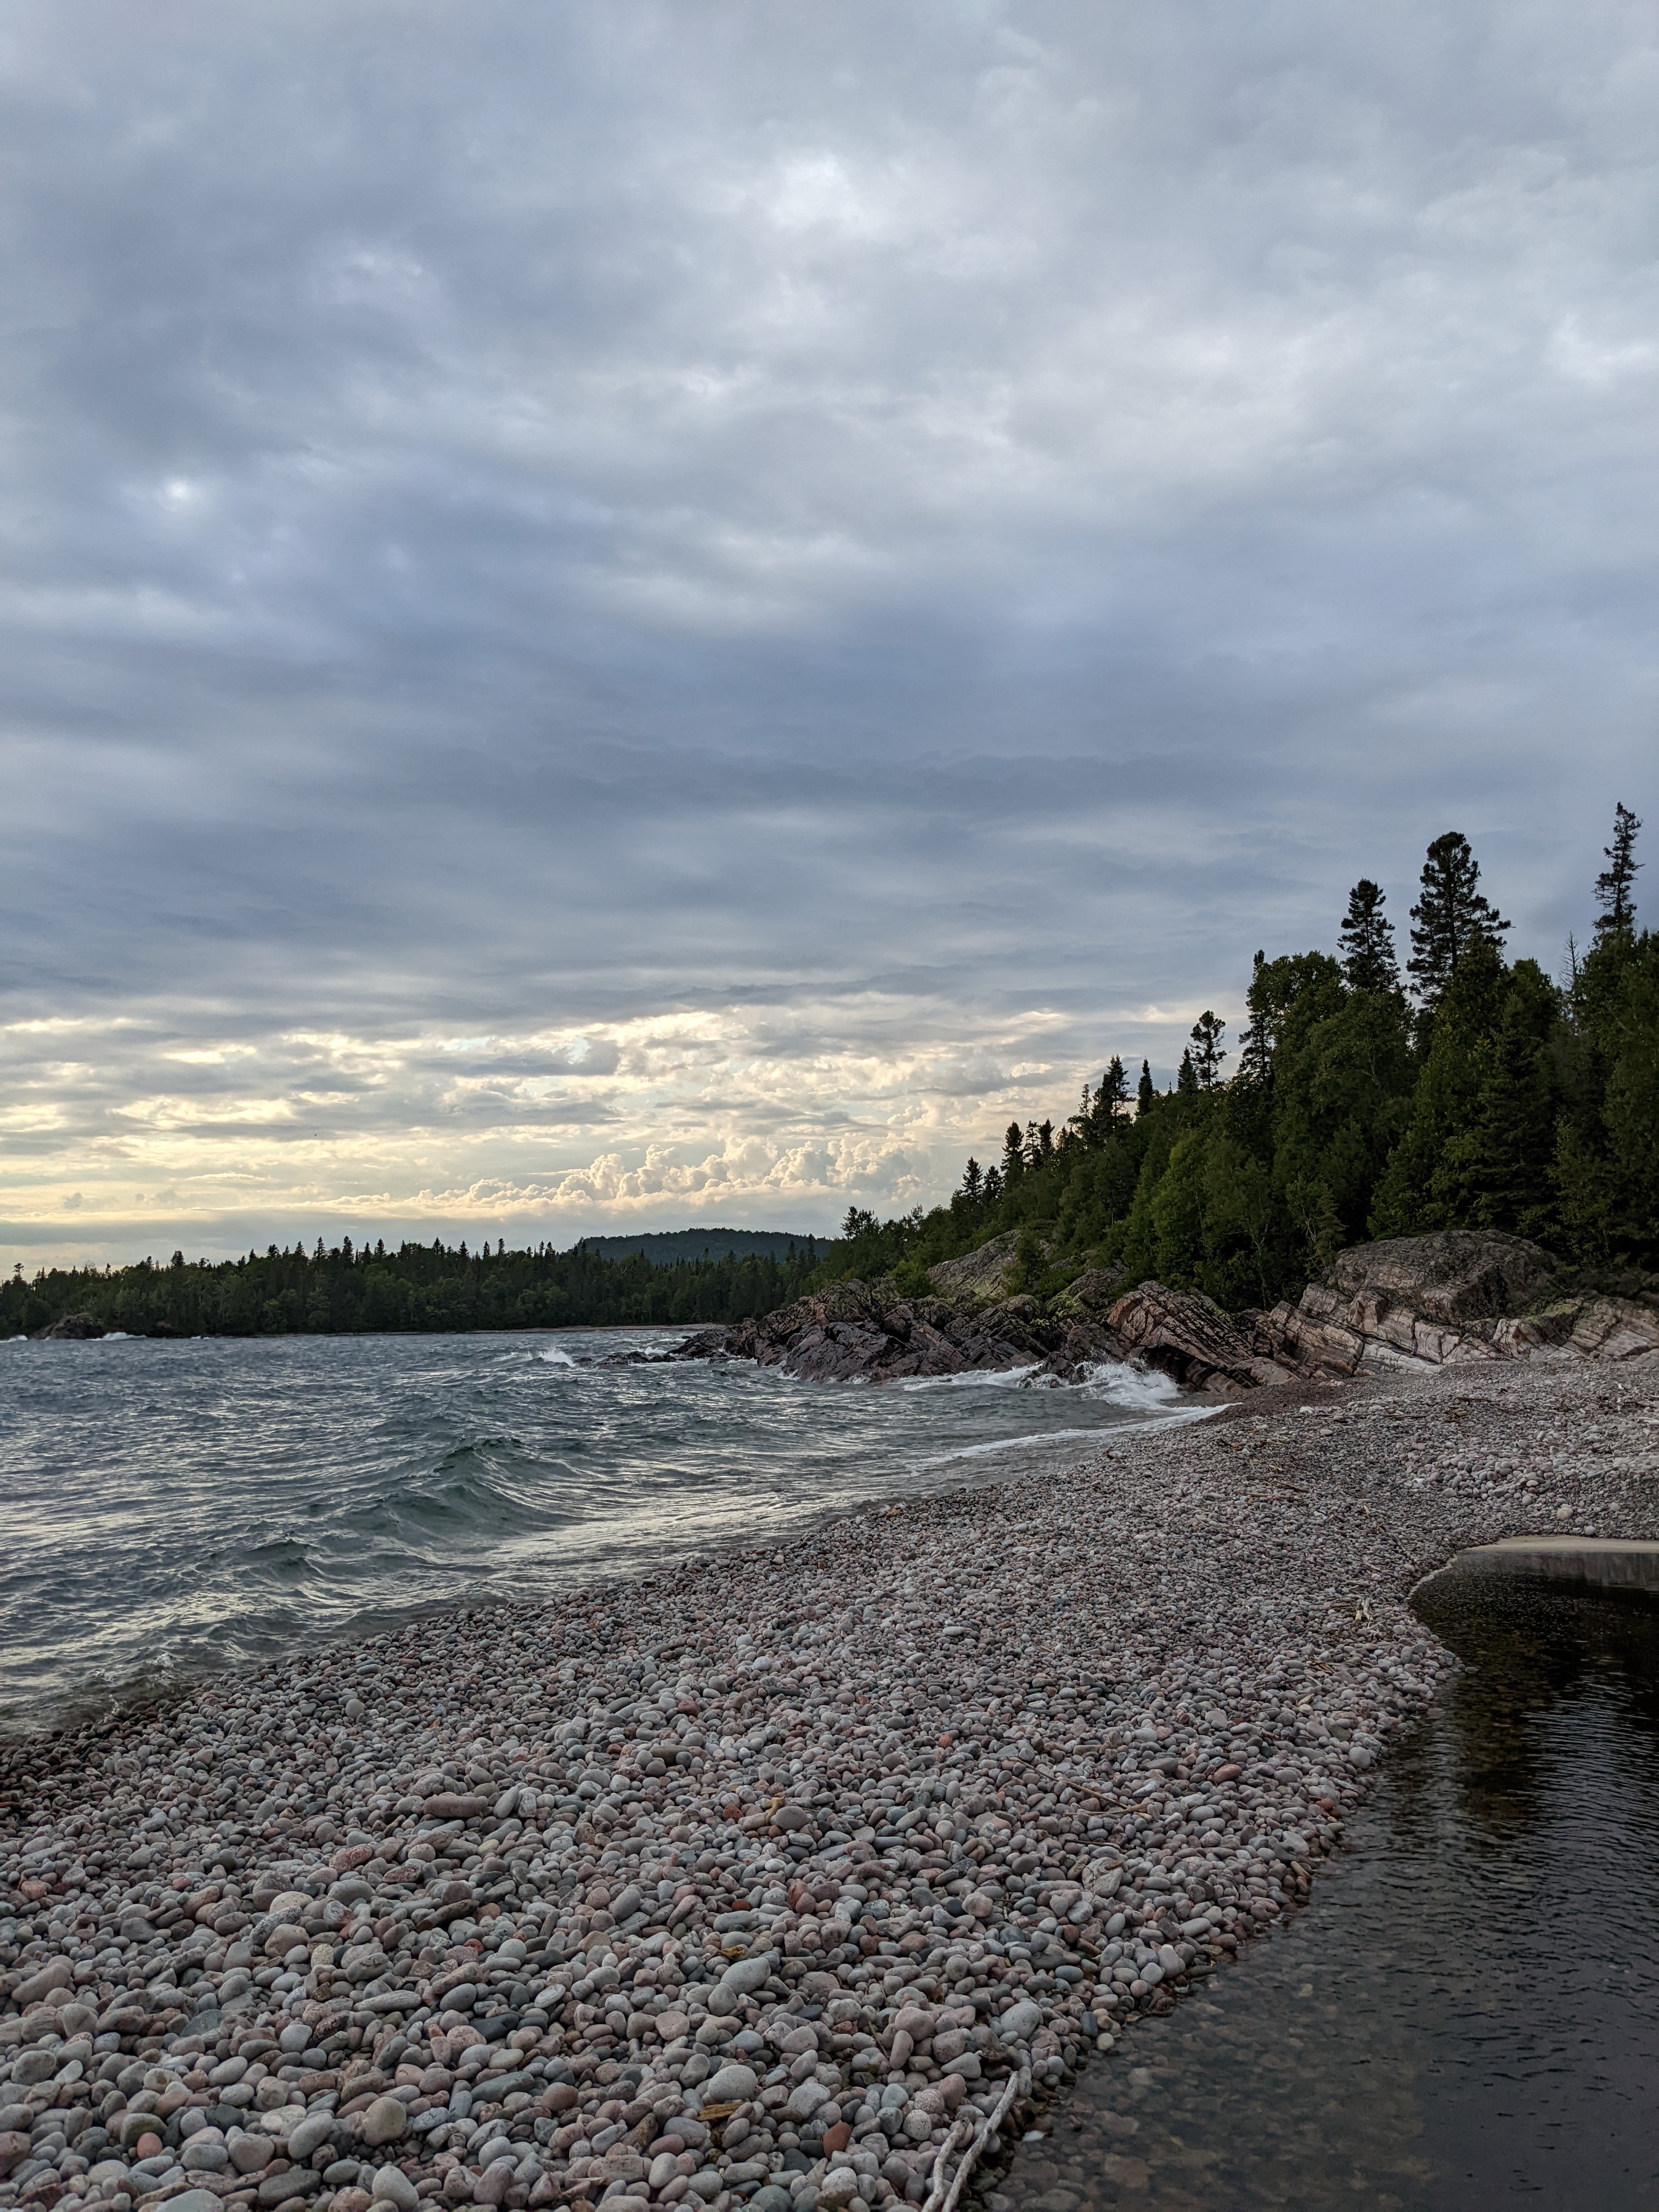 A rocky shoreline along Lake Superior in Ontario